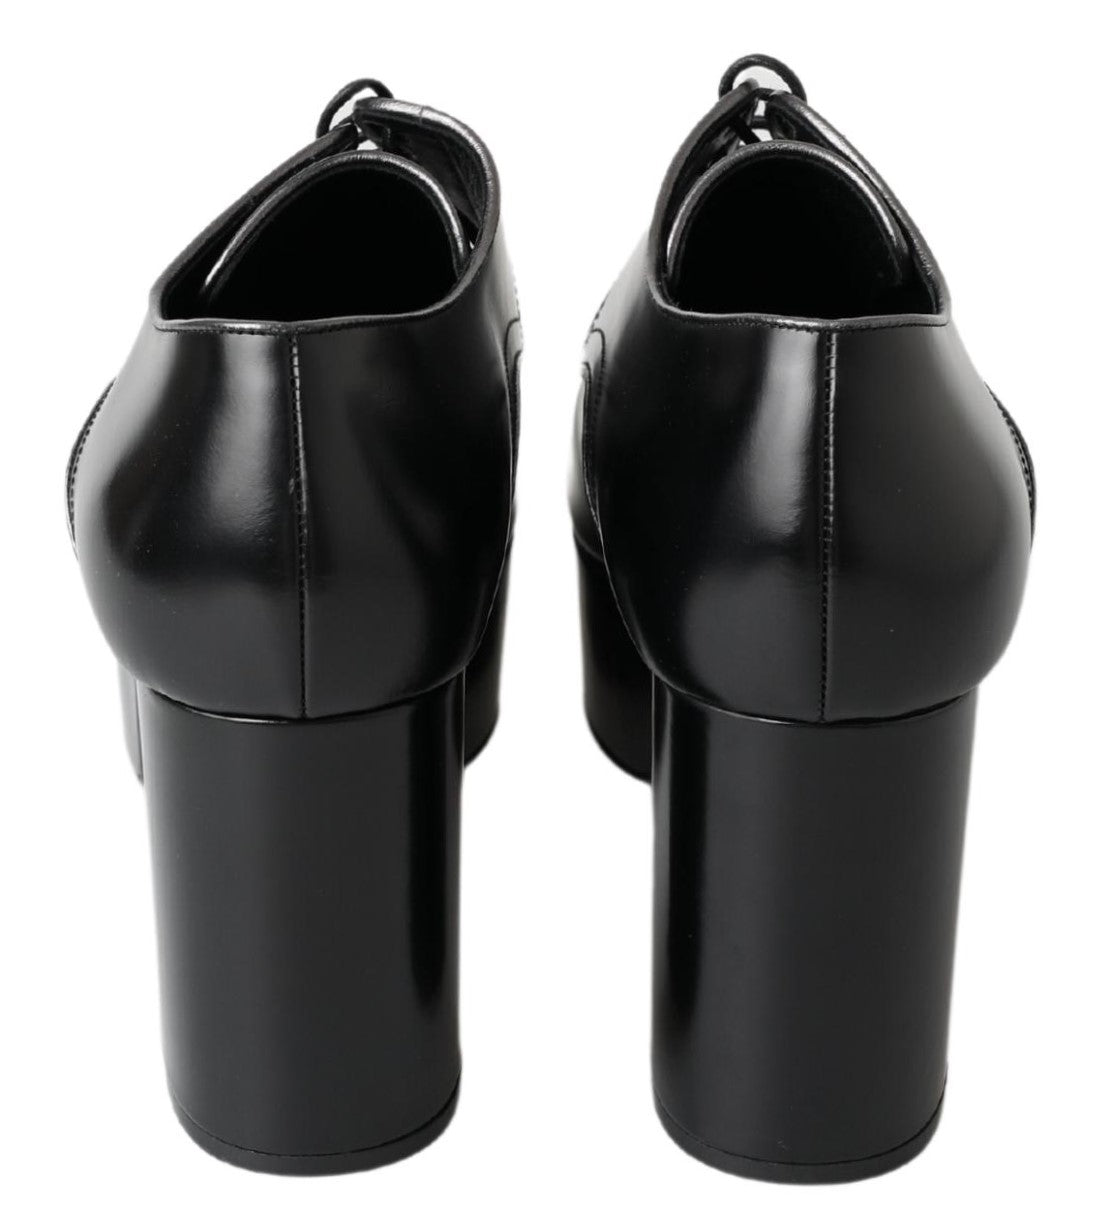 Dolce & Gabbana Elegant Black Leather Derby Dress Shoes